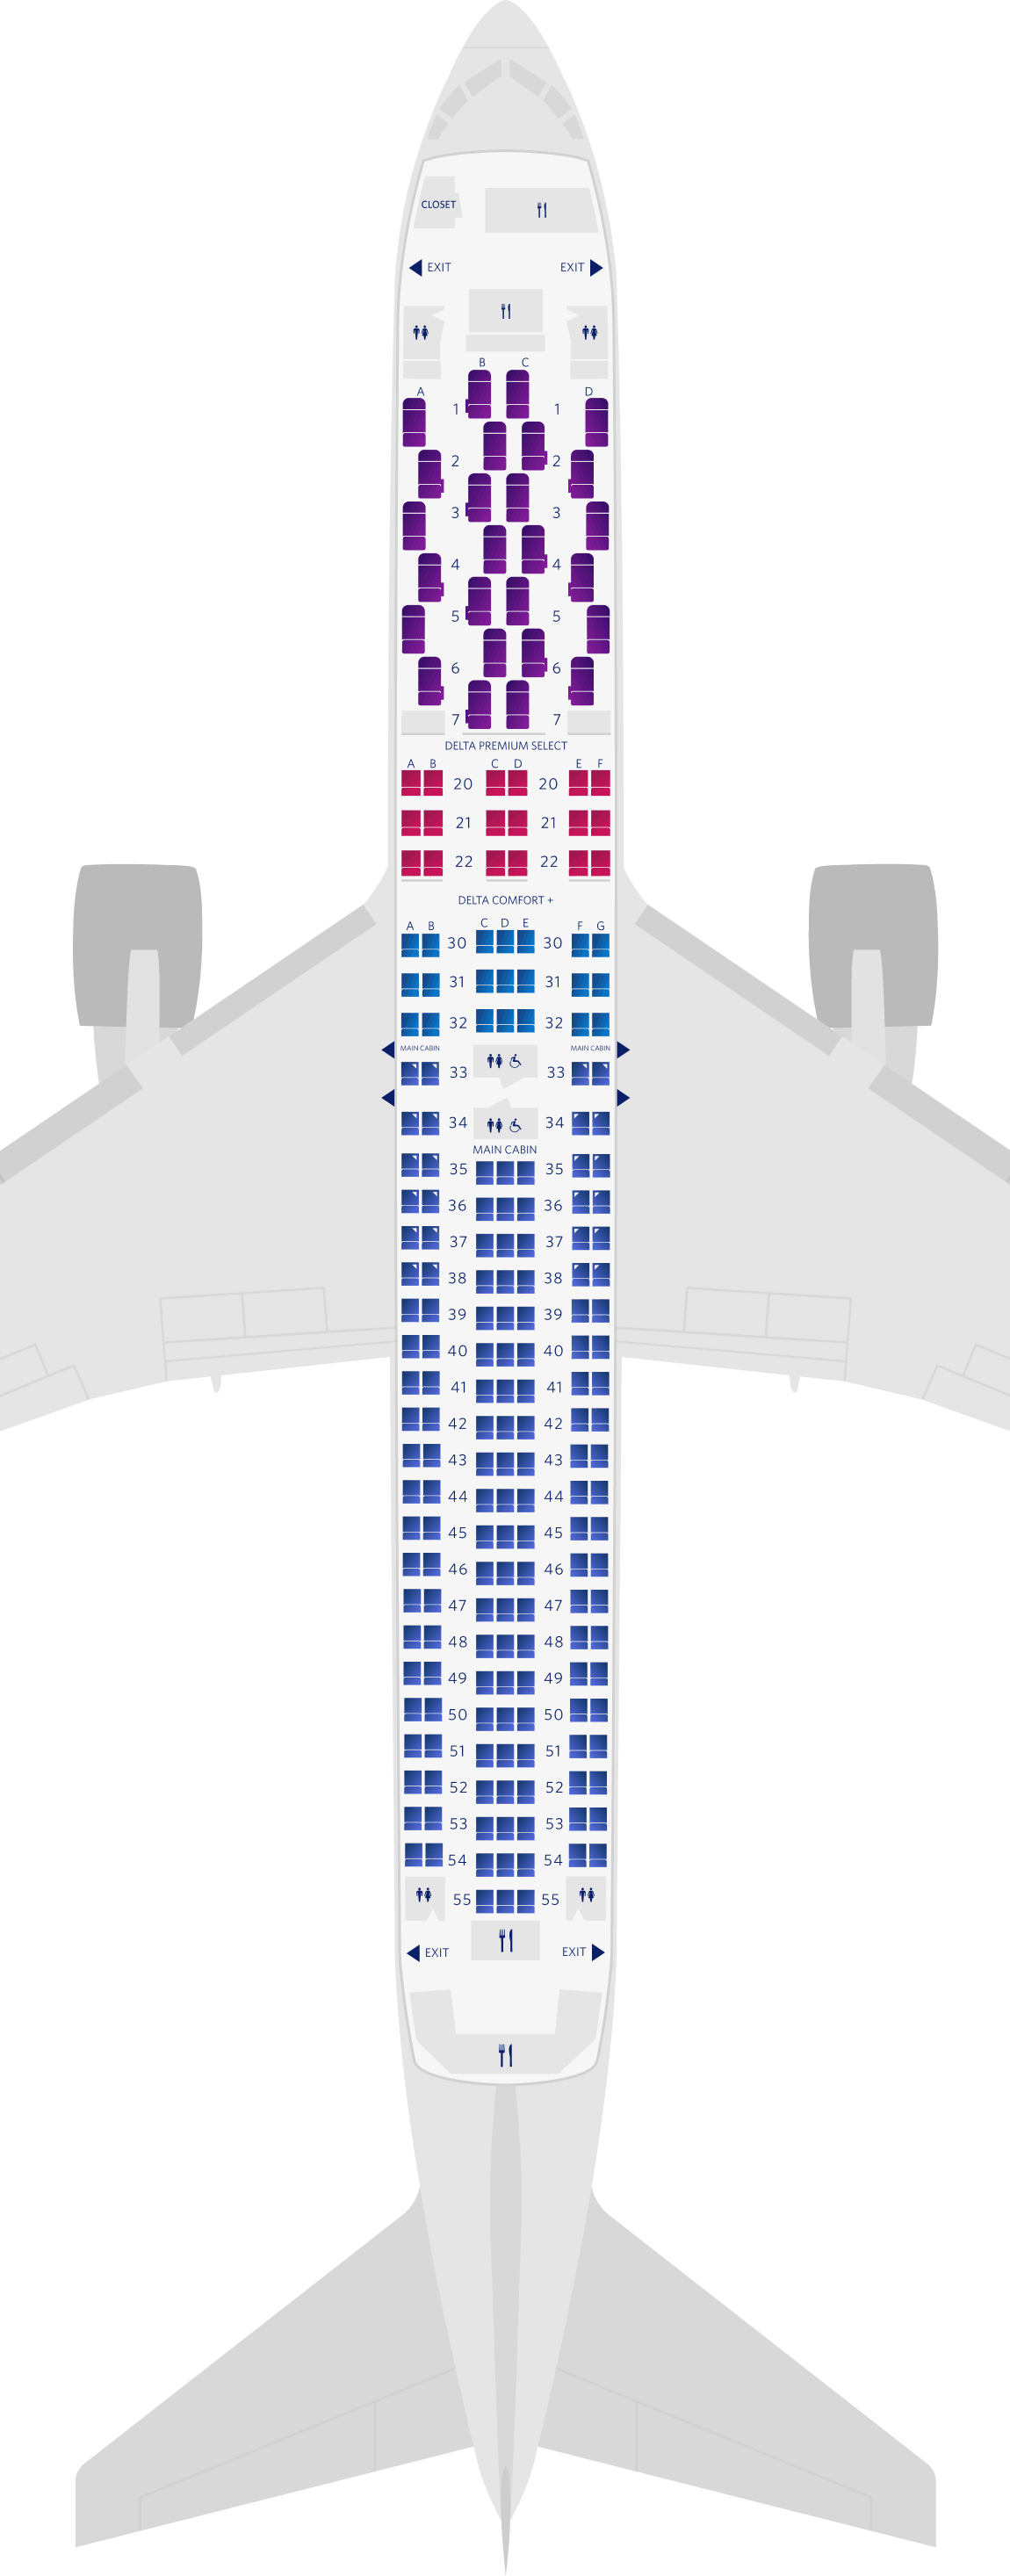 Configuration des sièges du Boeing 767-300ER (76K)